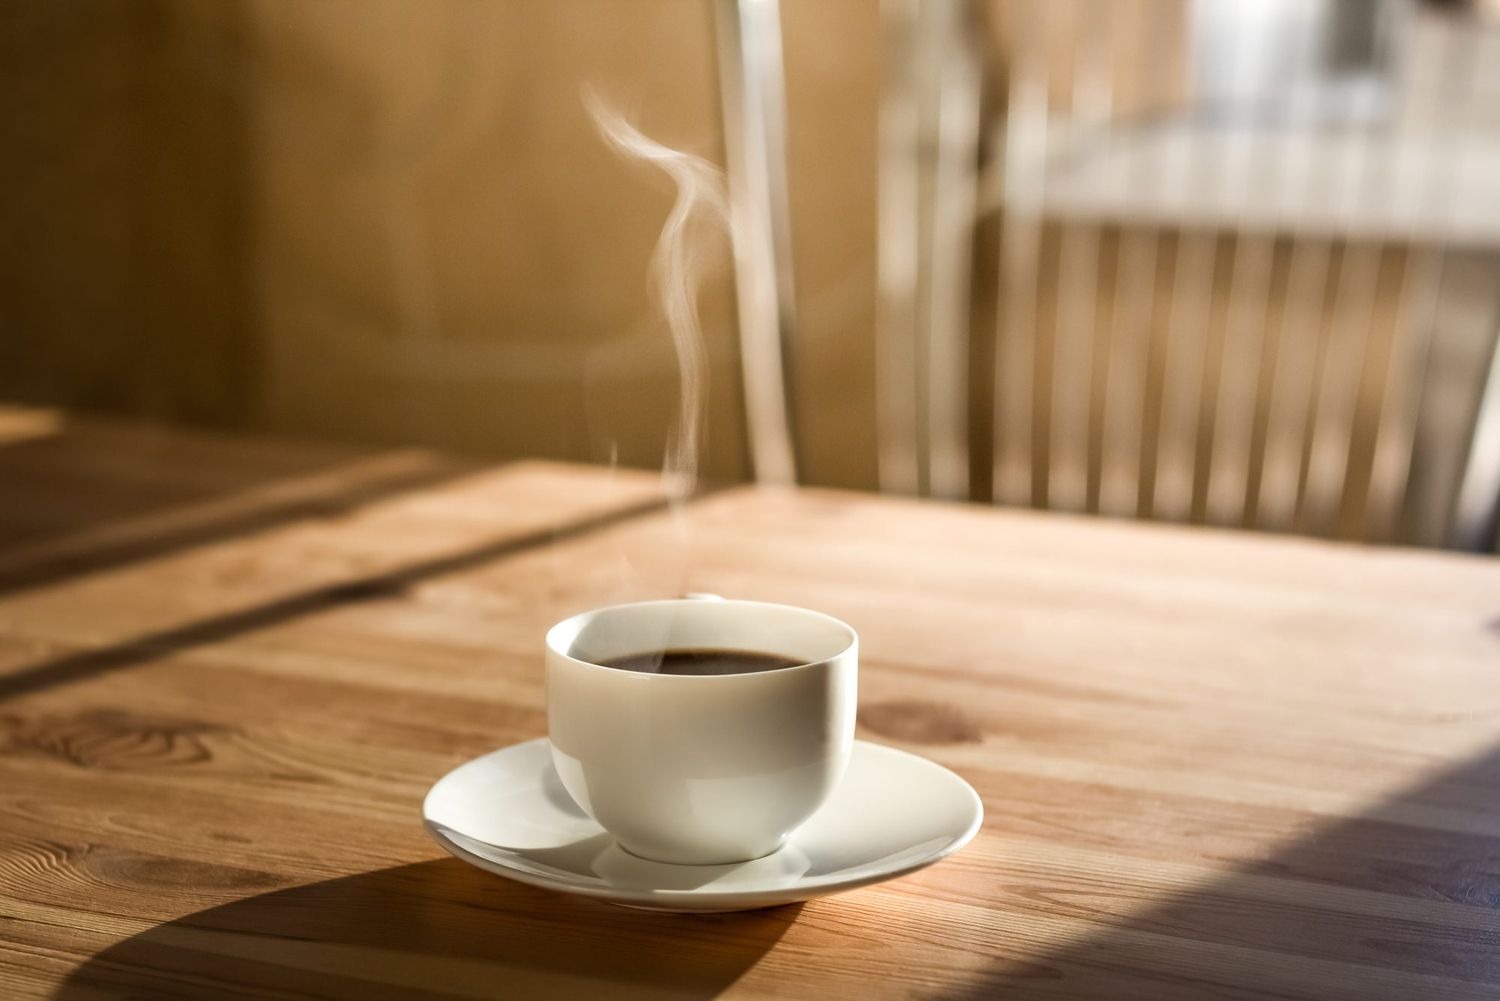 Tiến sĩ Anh tiết lộ kiểu uống cà phê khiến đường huyết tăng vọt